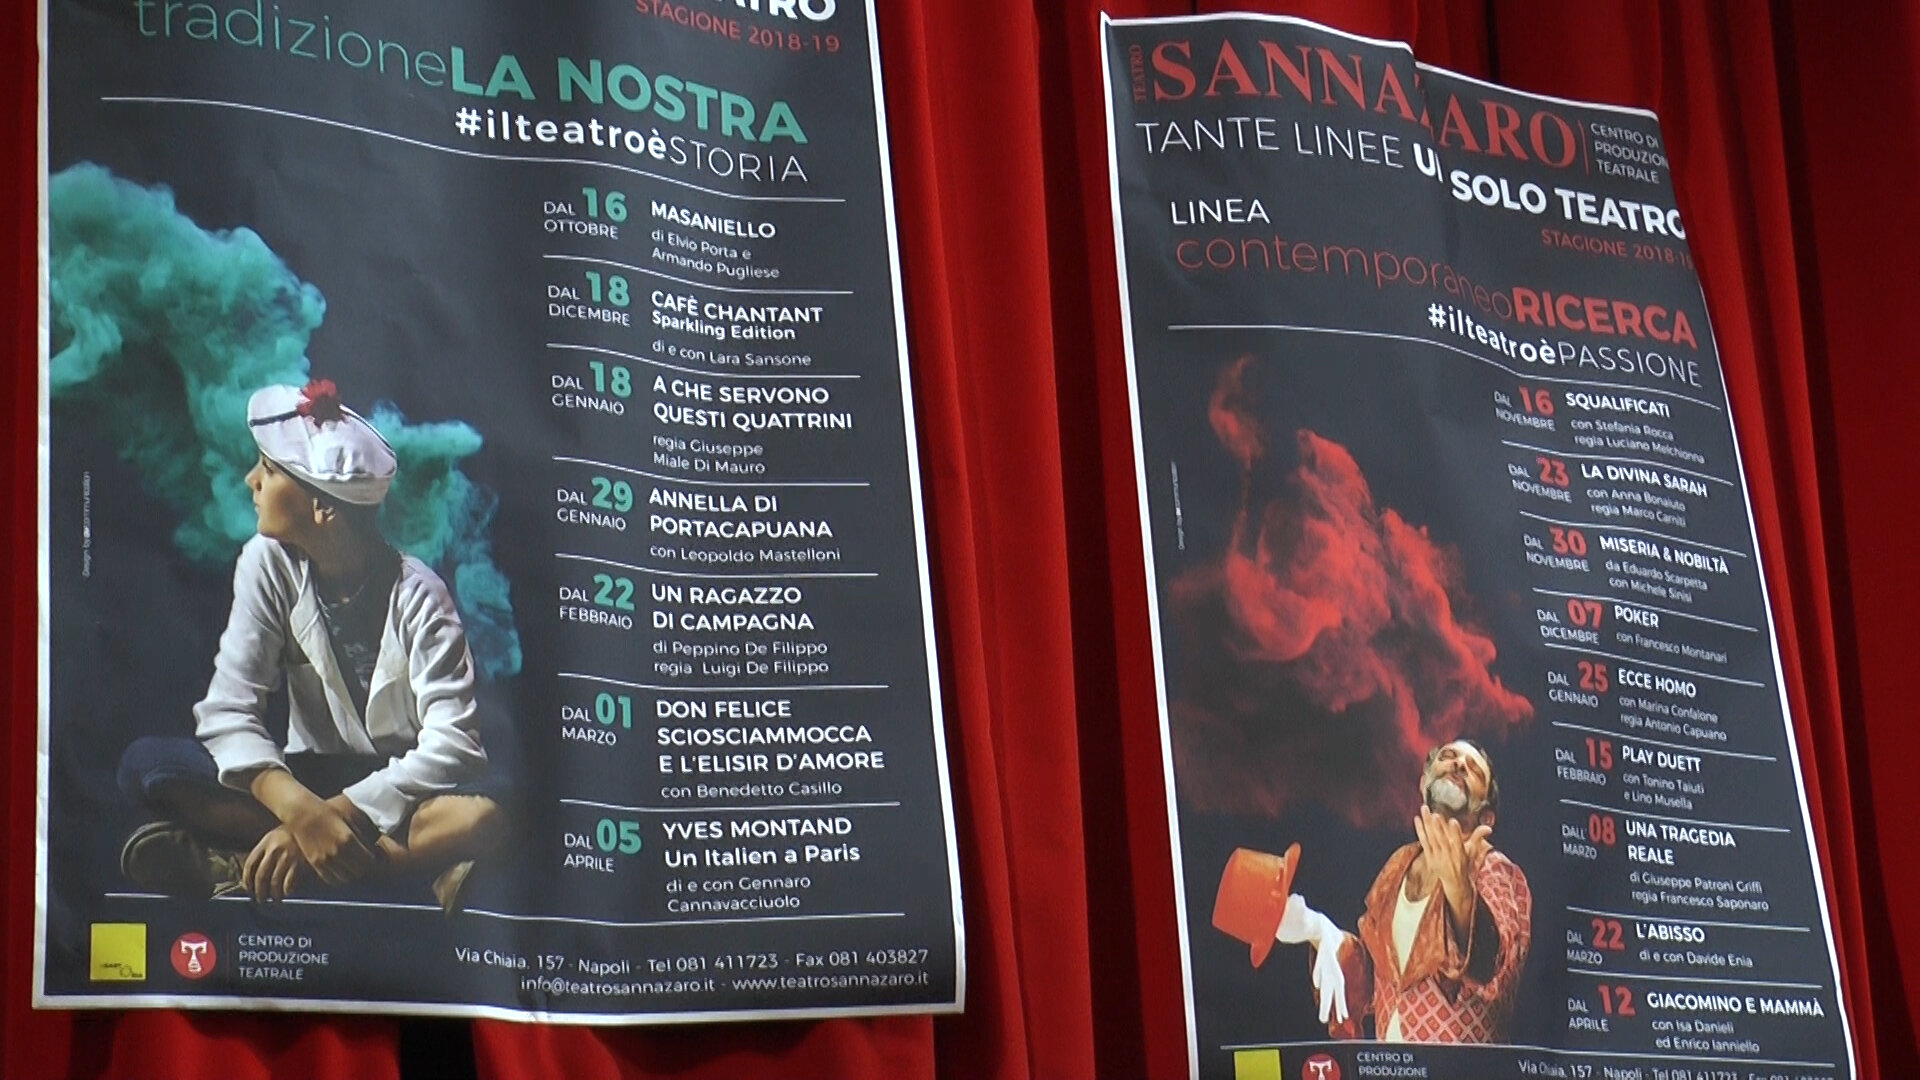 Nuova stagione per il Teatro Sannazaro, riconosciuto Centro di Produzione Teatrale